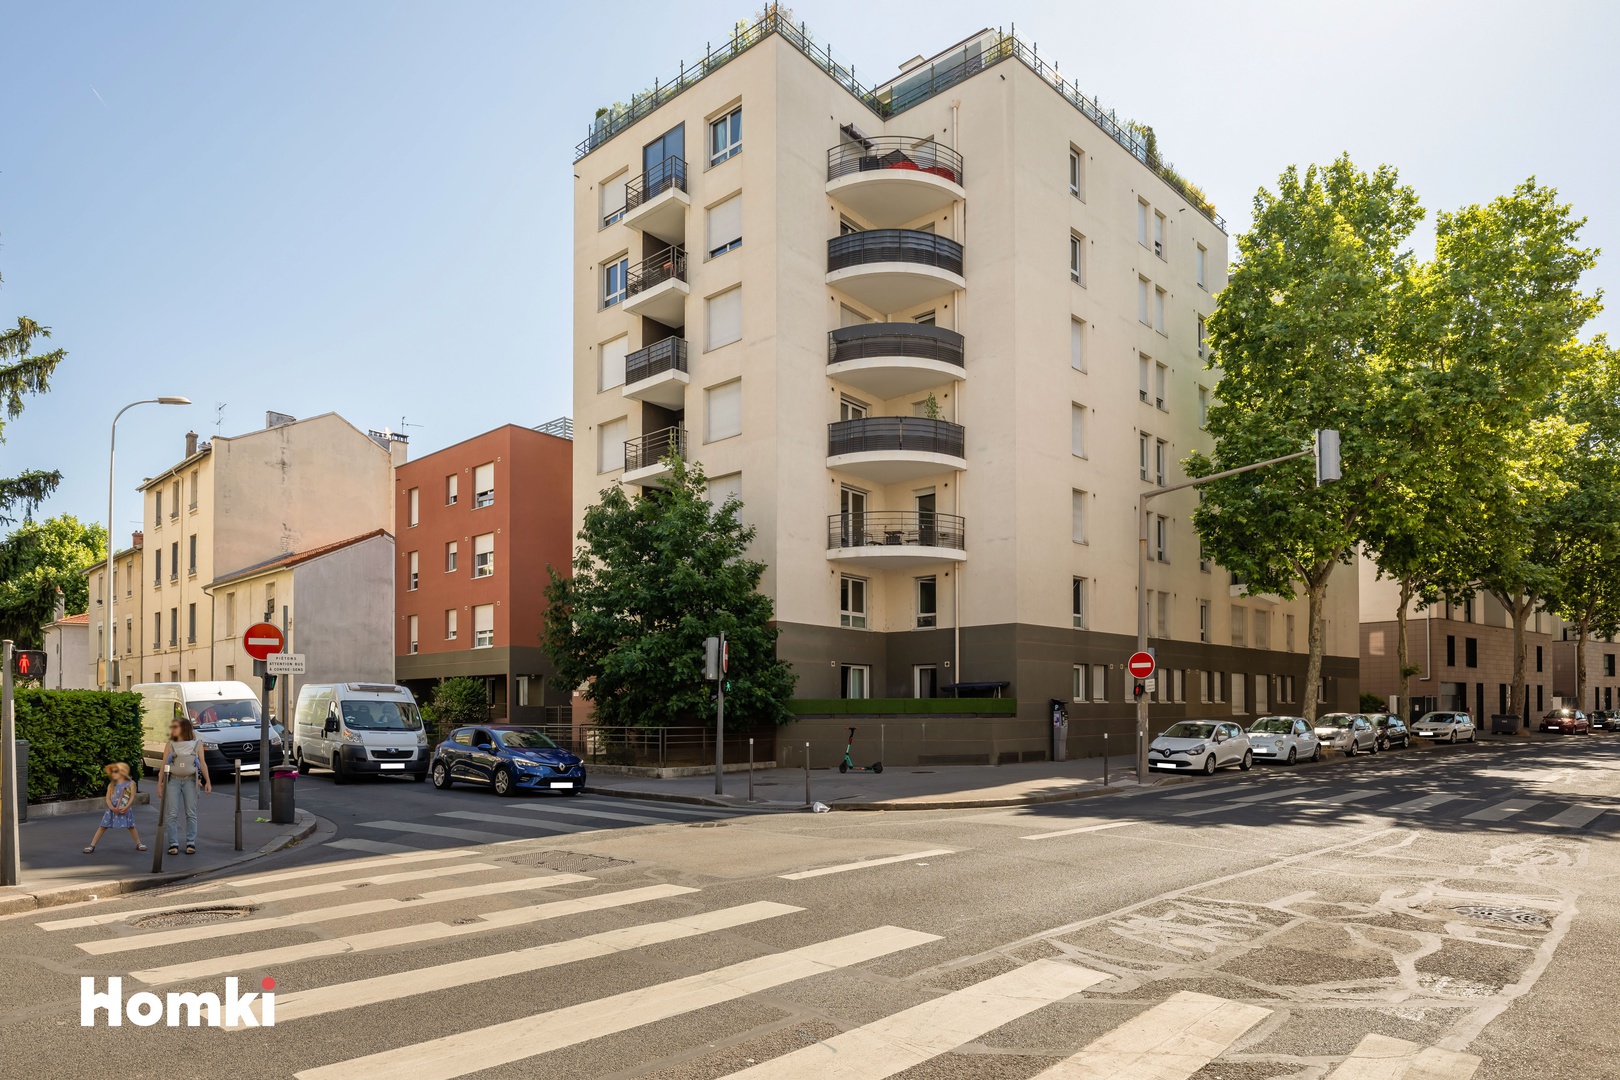 Homki - Vente Appartement  de 65.0 m² à Lyon 69008